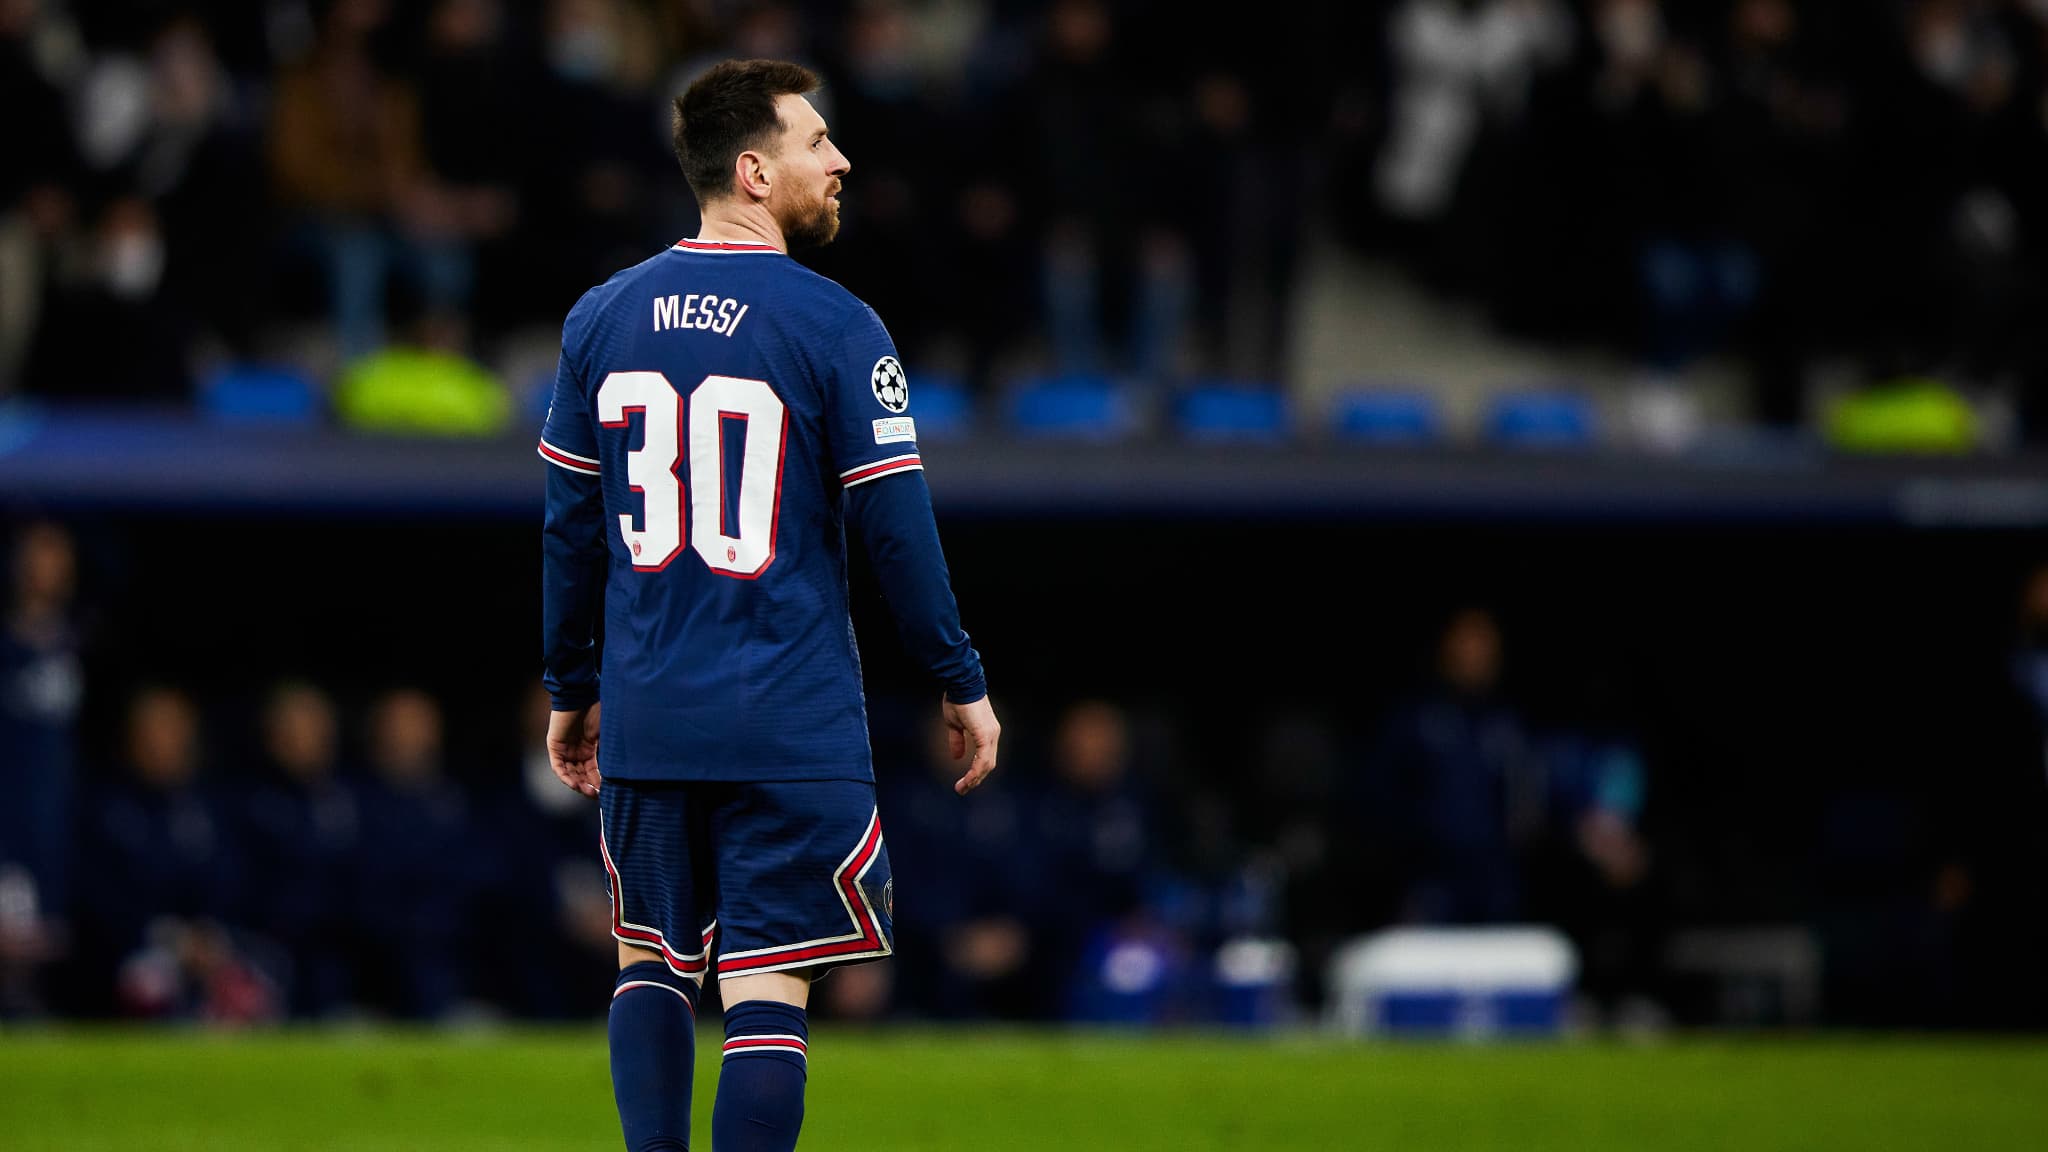 De toekomst van Messi in Paris Saint-Germain baart de Spaanse pers zorgen